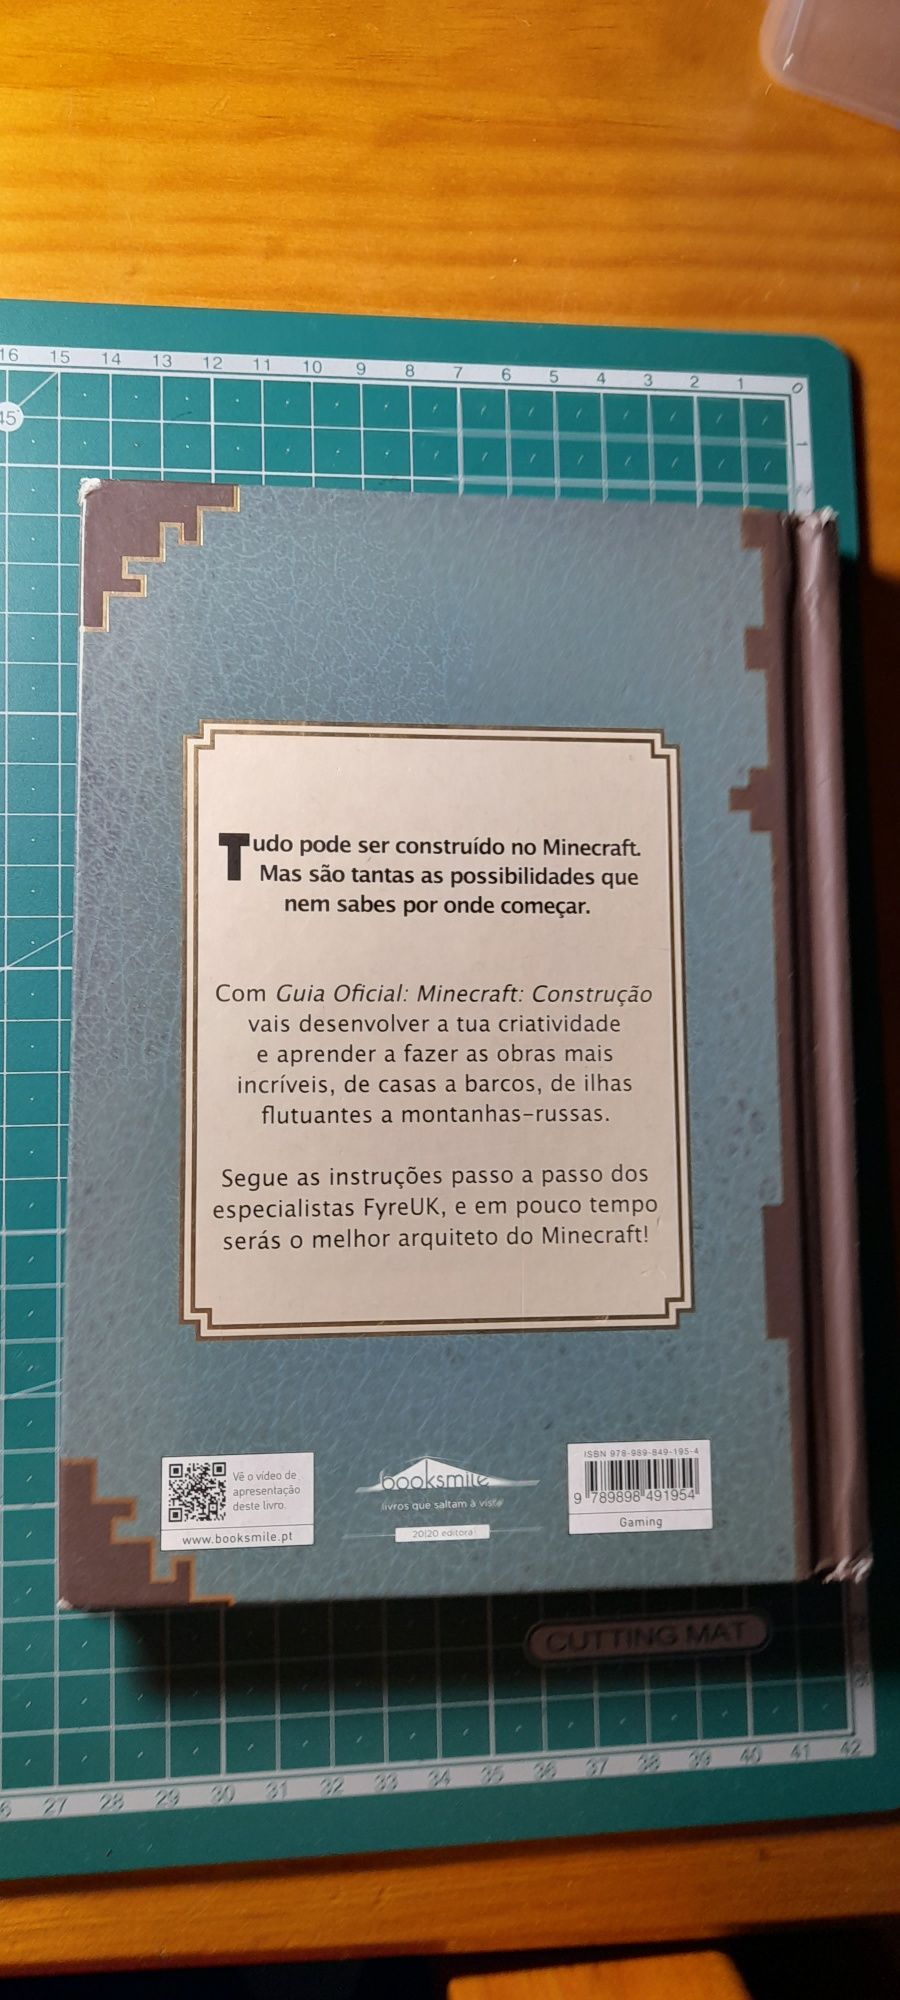 Livro "Minecraft construção"